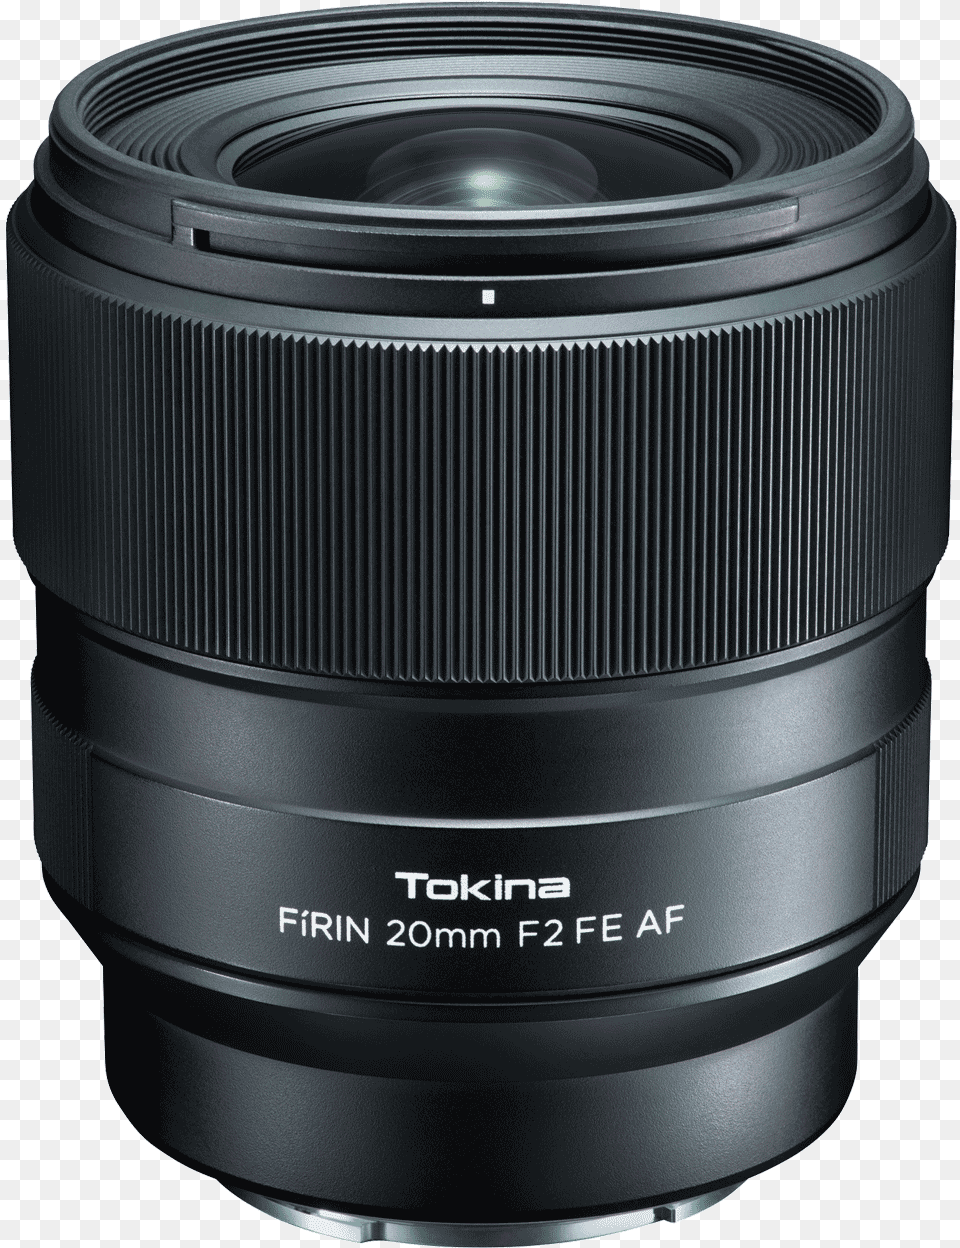 Frin 20mm F2 Fe Af Tokina Firin 20mm F 2 Af Fe, Camera Lens, Electronics, Speaker Free Png